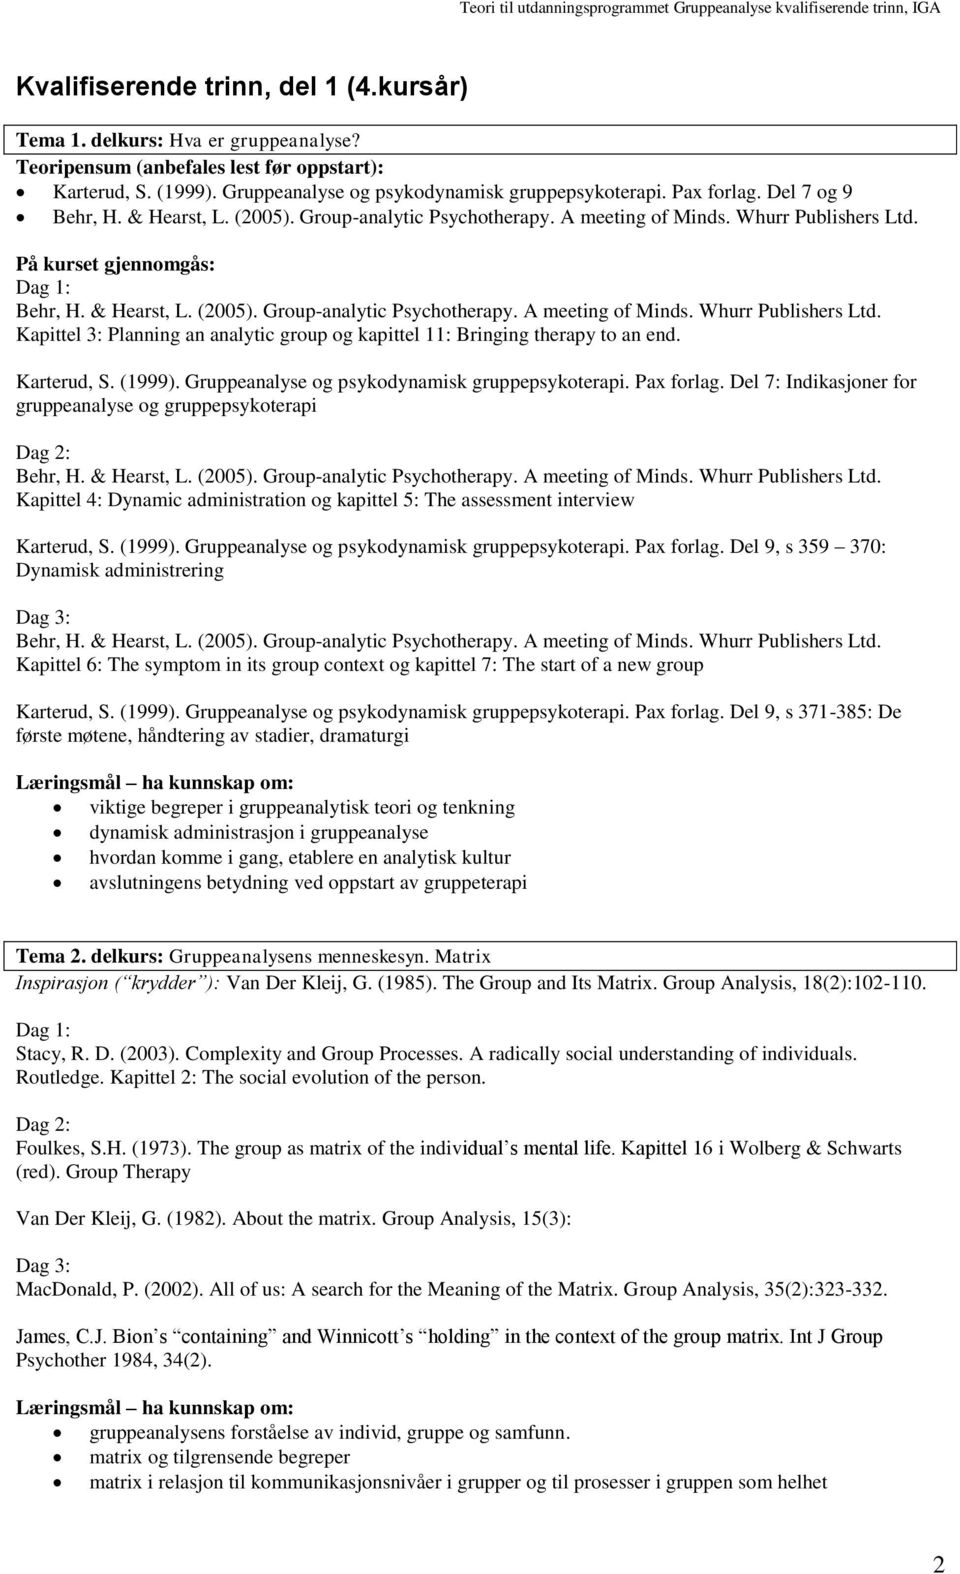 Pax forlag. Del 7: Indikasjoner for gruppeanalyse og gruppepsykoterapi Kapittel 4: Dynamic administration og kapittel 5: The assessment interview Karterud, S. (1999).